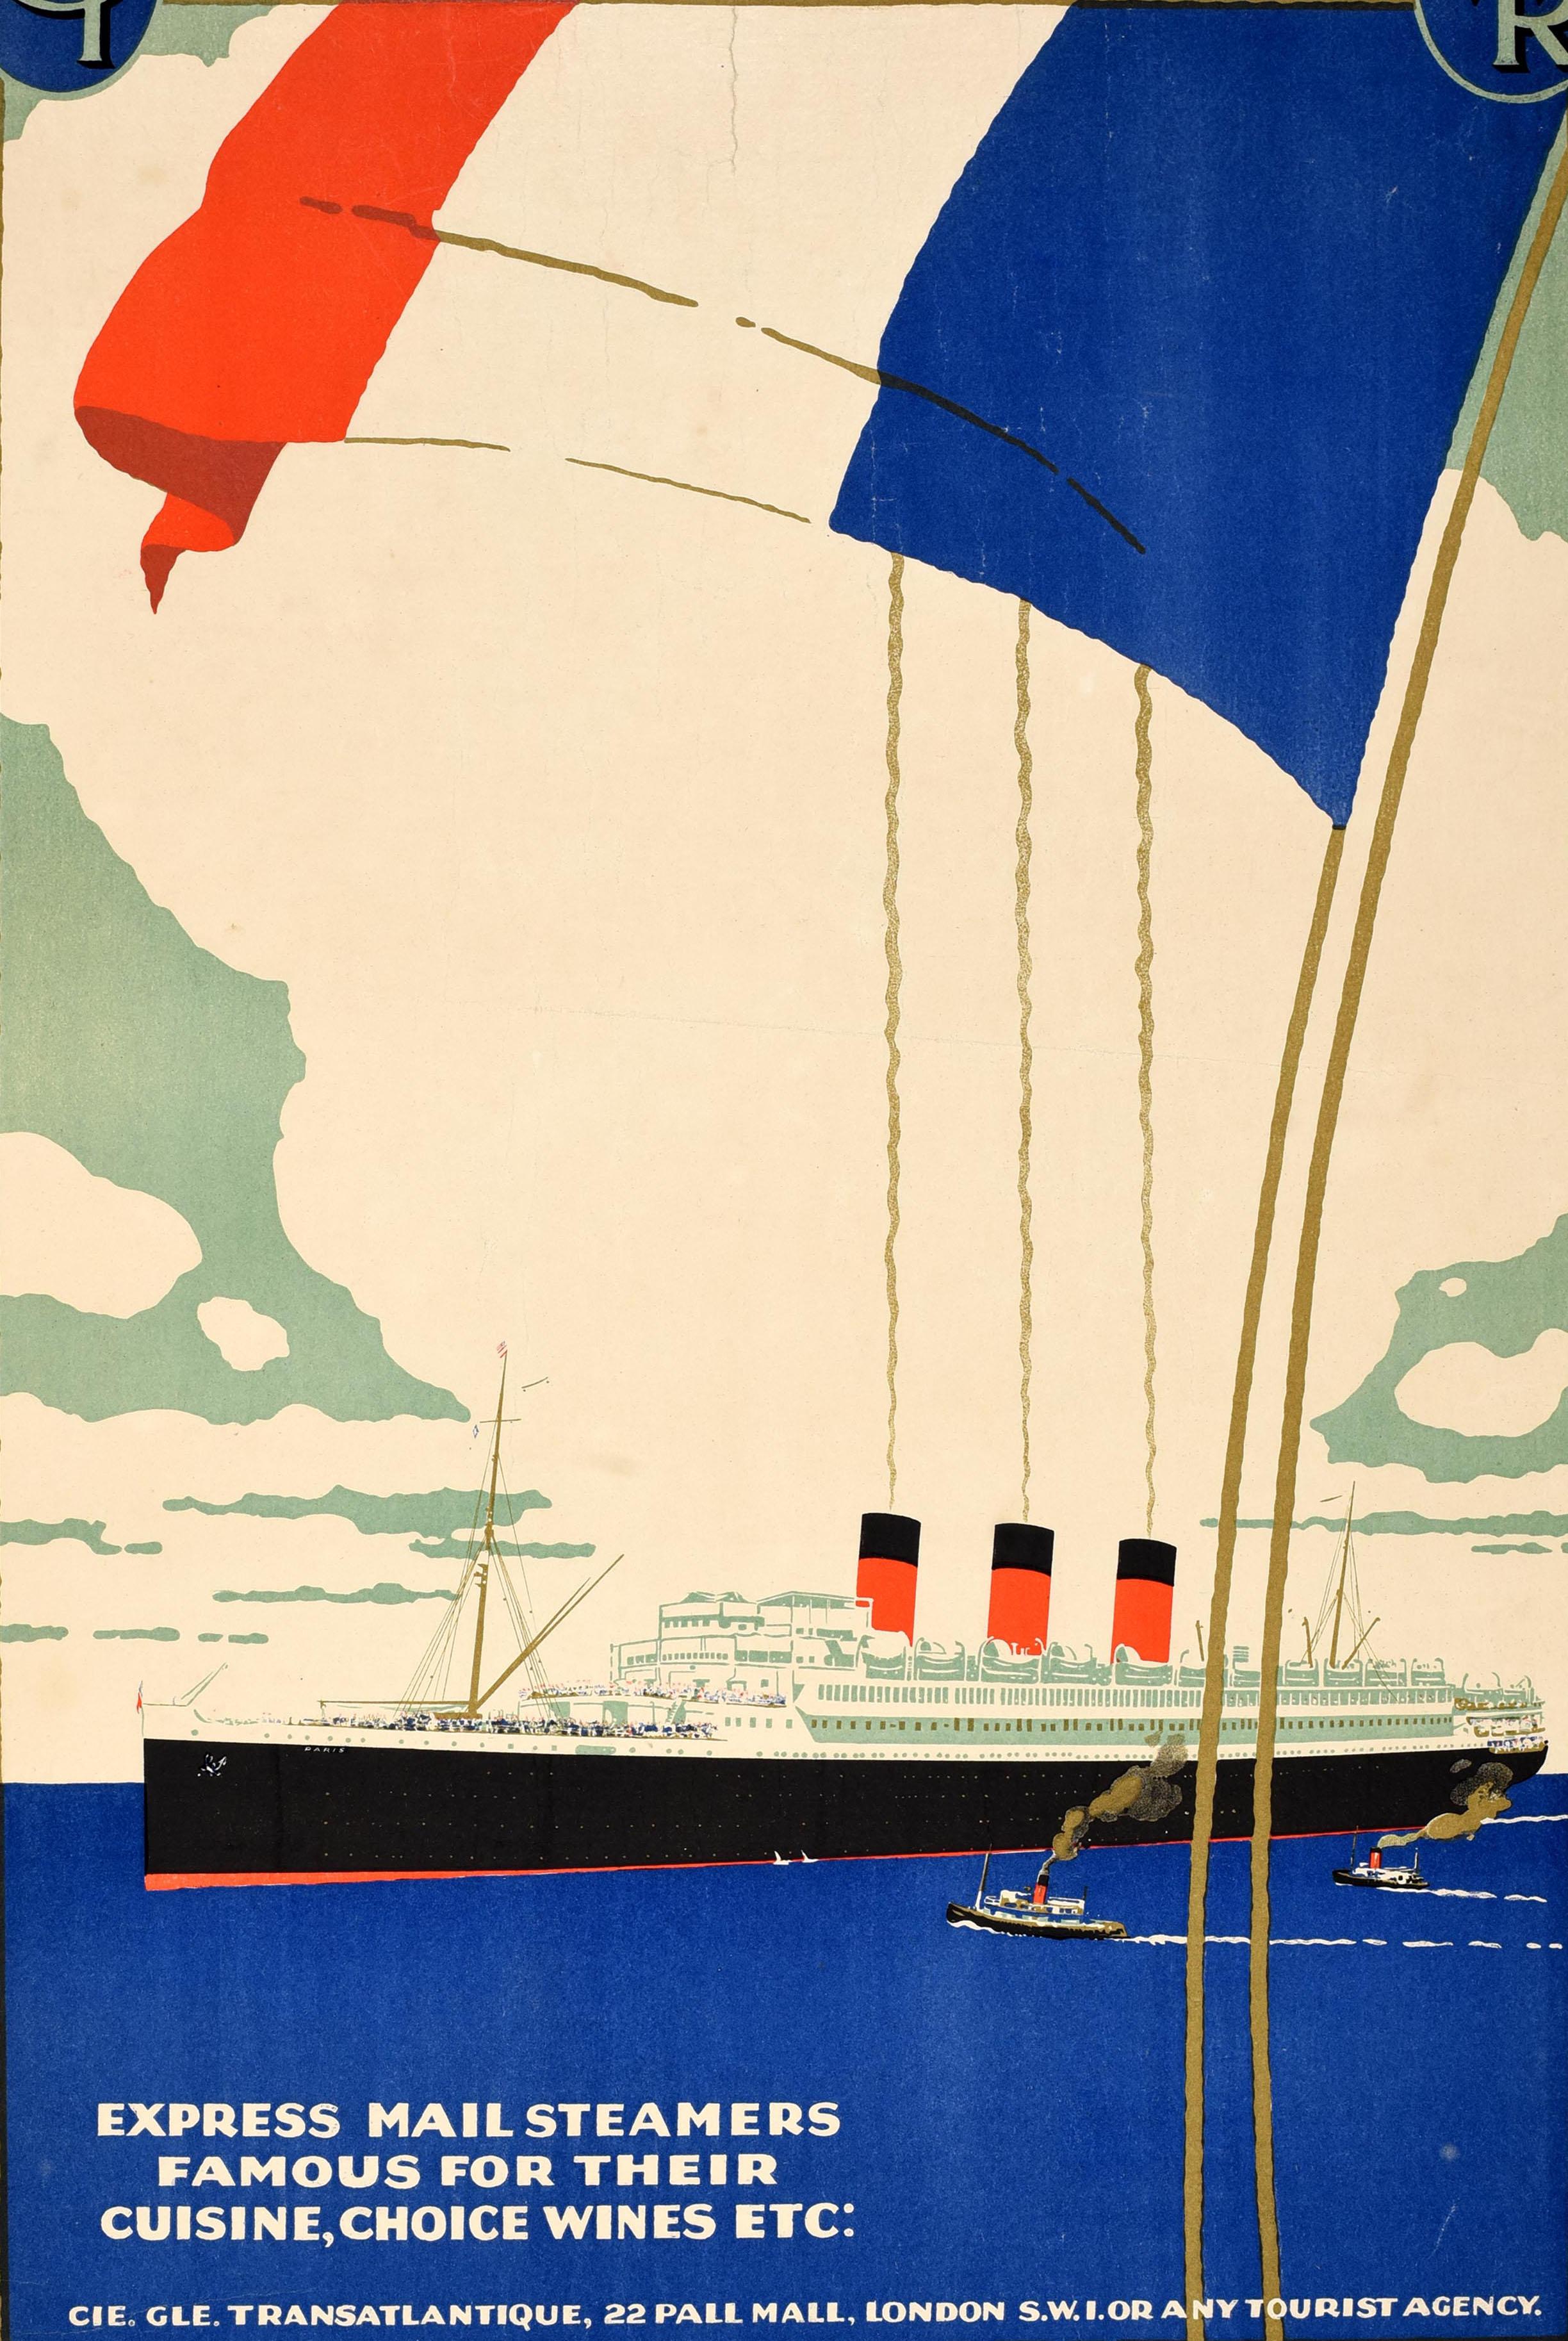 Original Vintage Kreuzfahrt Plakat Werbung Plymouth New York ausgestellt von Compagnie Generale Transatlantique Französisch Linie CGT. Elegantes Art-Déco-Design mit einem Ozeandampfer, der mit kleinen Schleppern auf dem ruhigen blauen Wasser fährt,